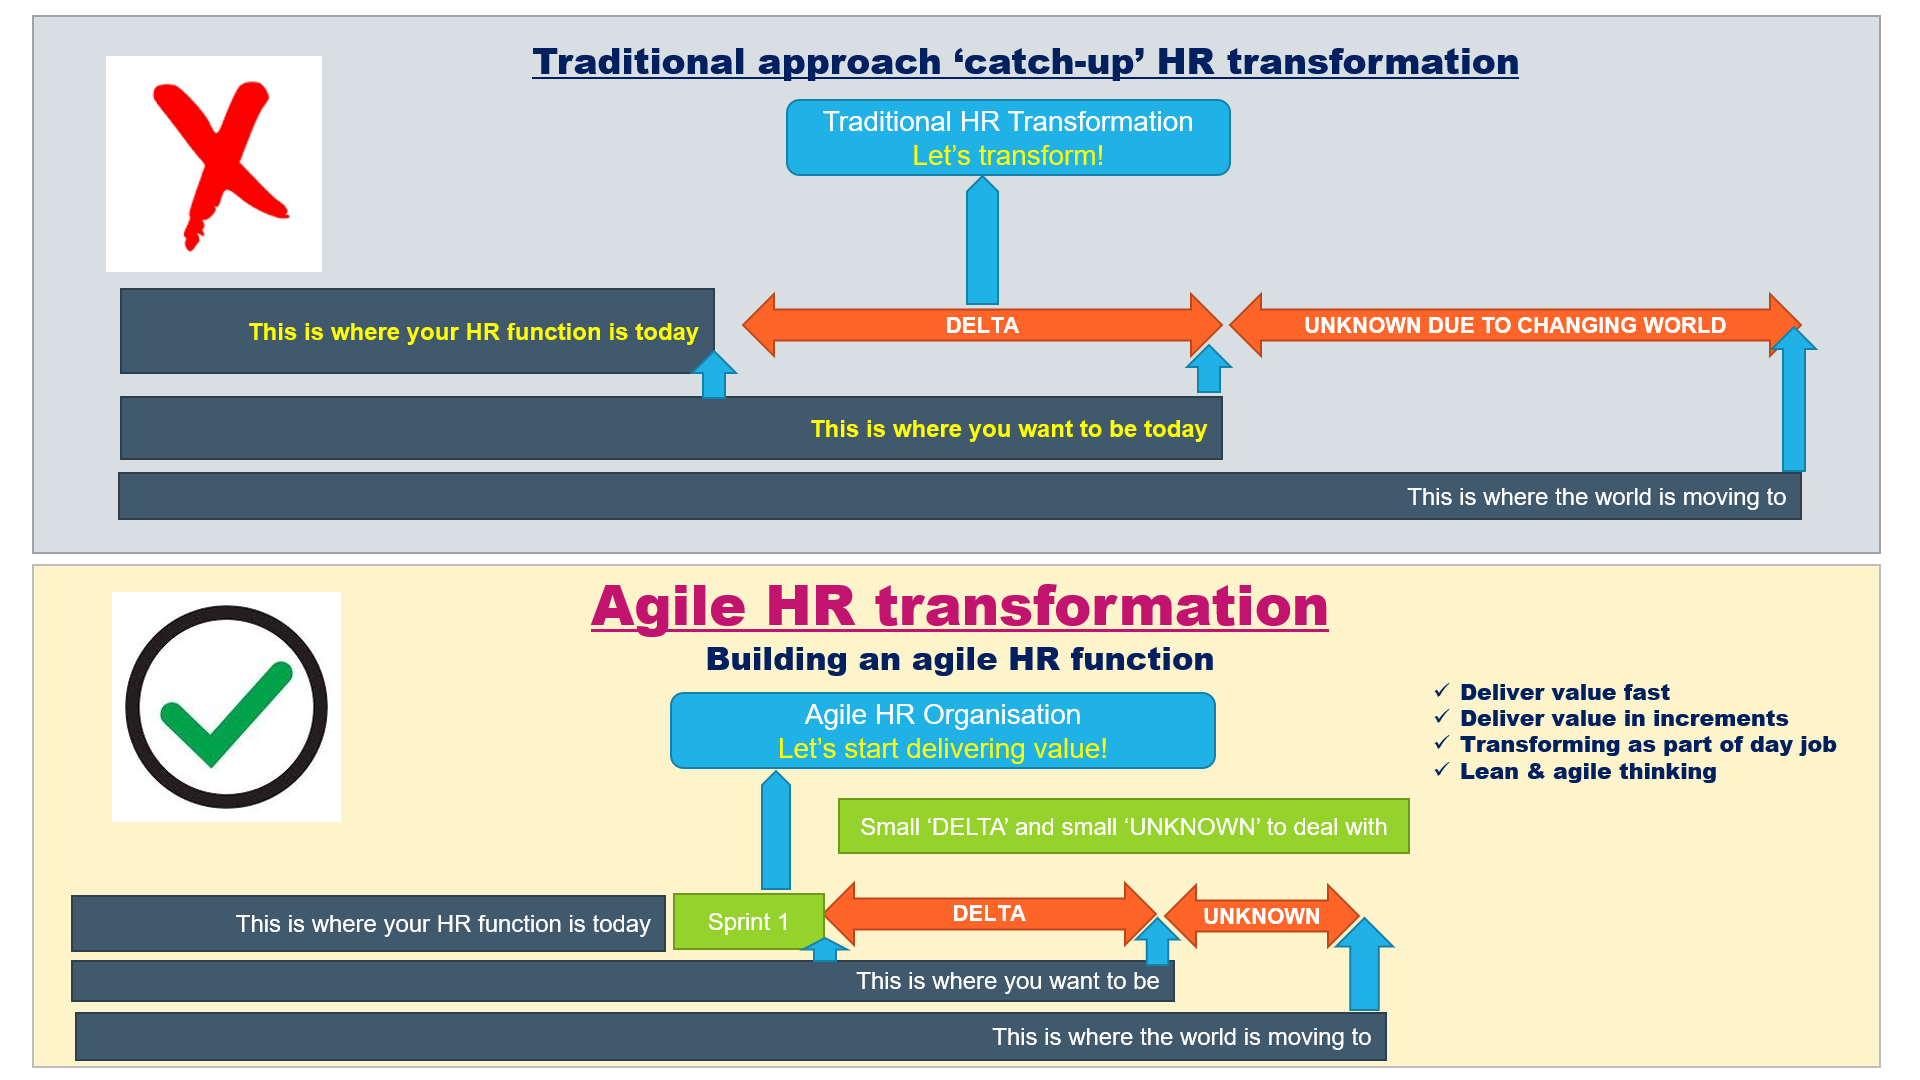 Agile HR transformation